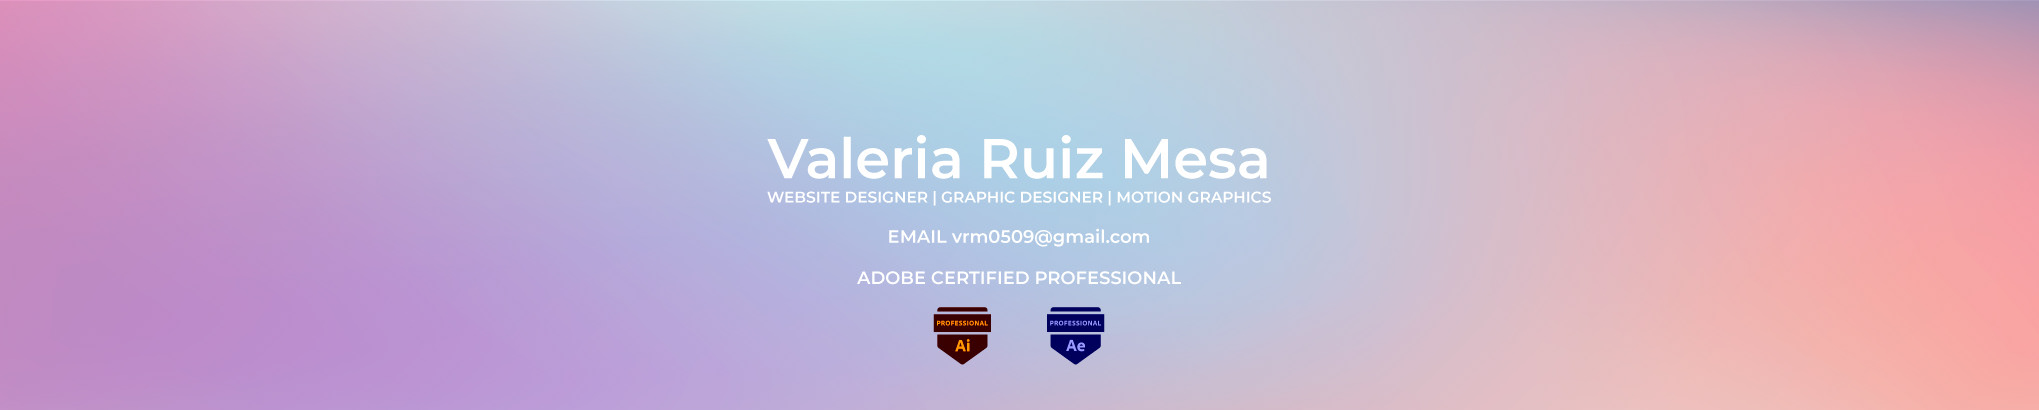 Valeria Ruiz Mesa's profile banner